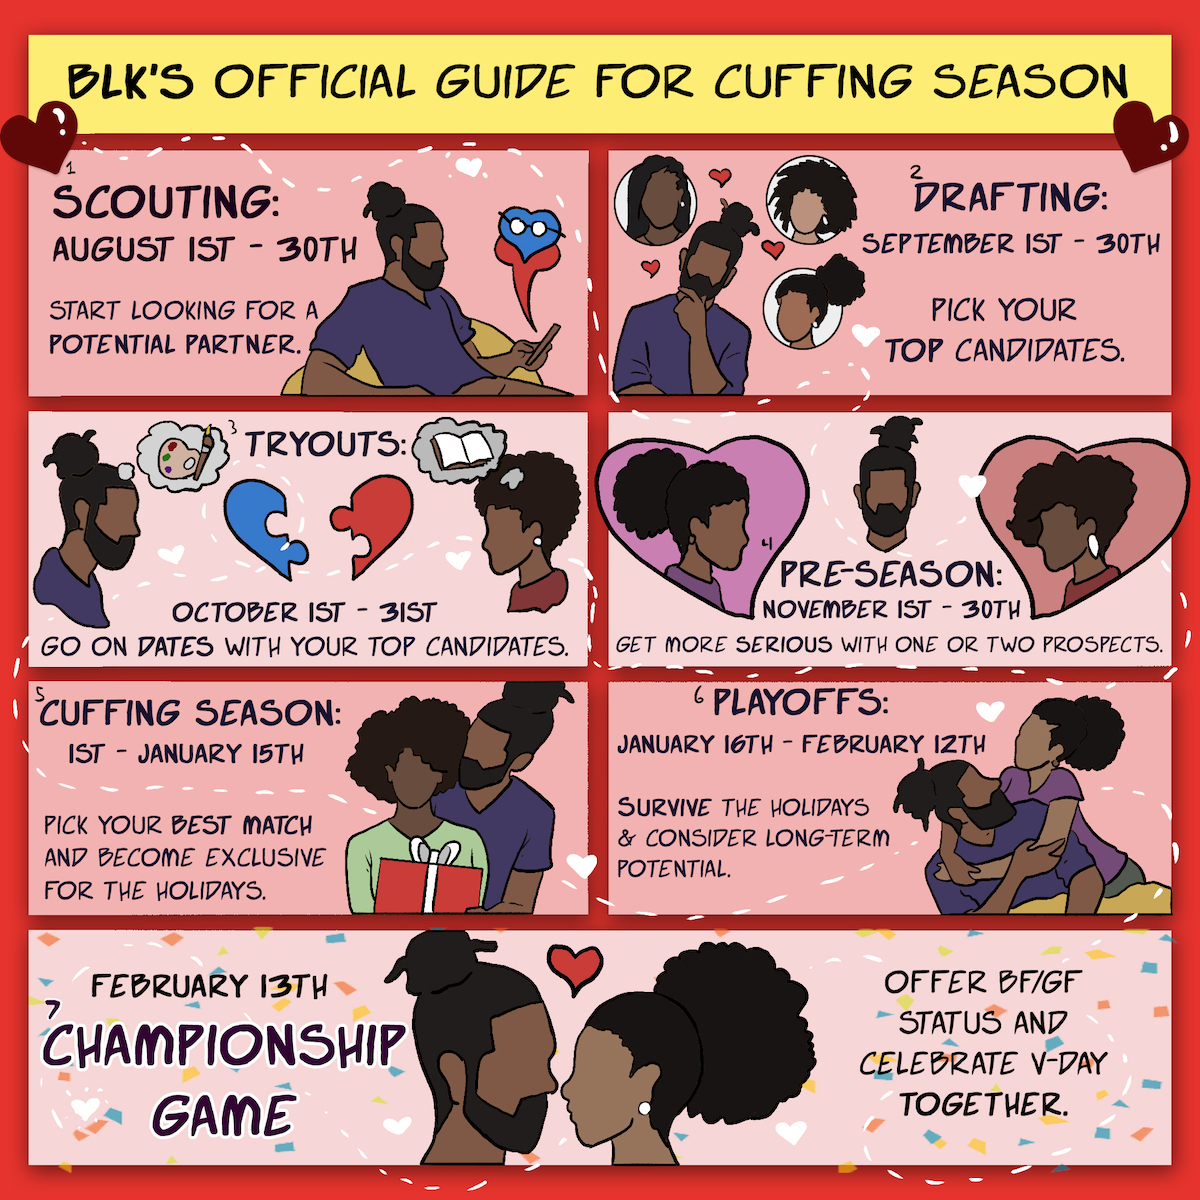 BLK Cuffing Season Guide